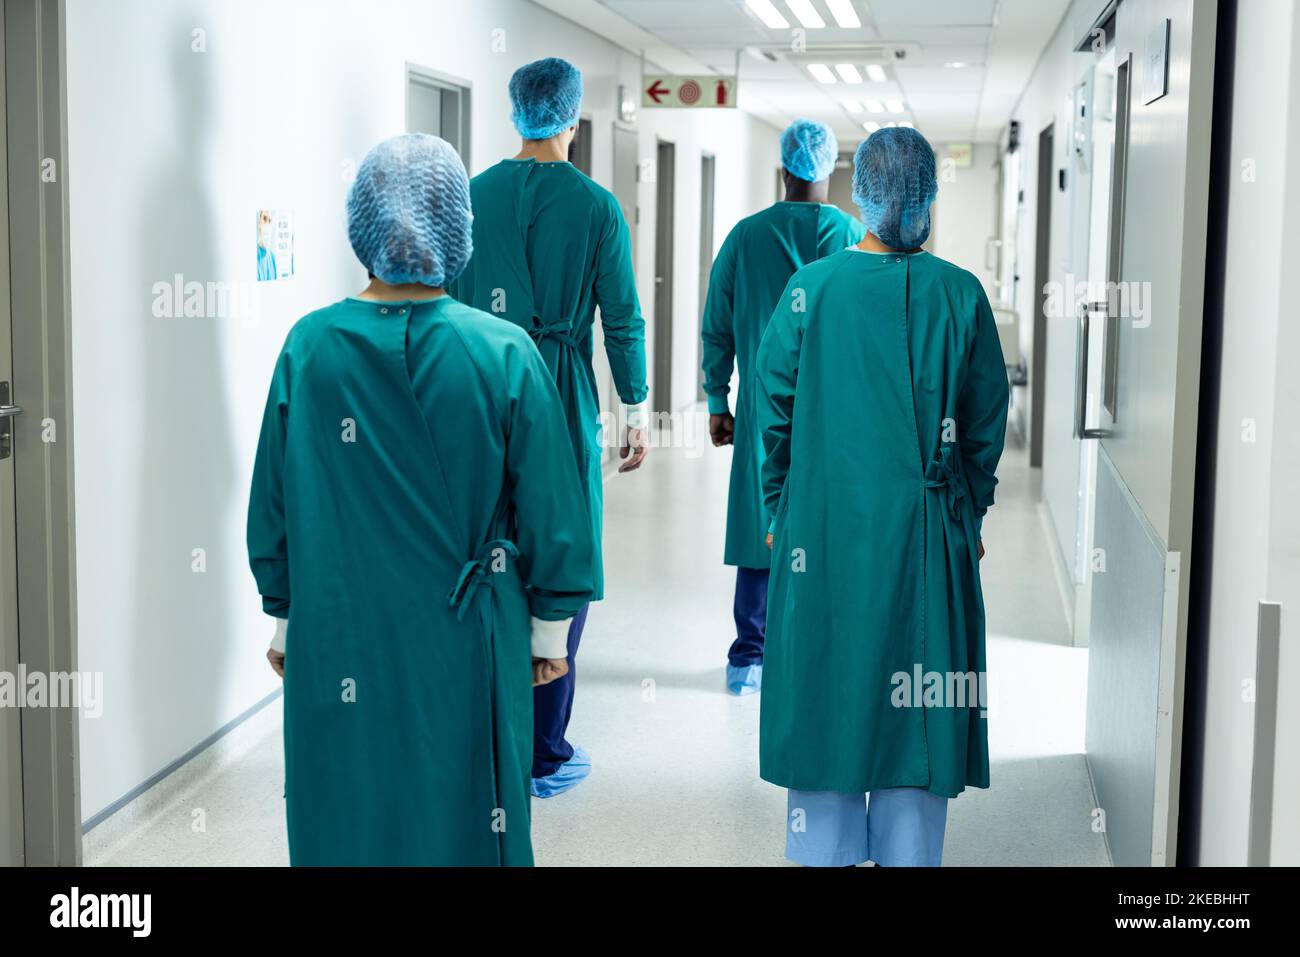 Rückansicht von vier Chirurgen in Operationskappen und Kitteln im Krankenhausgang Stockfoto